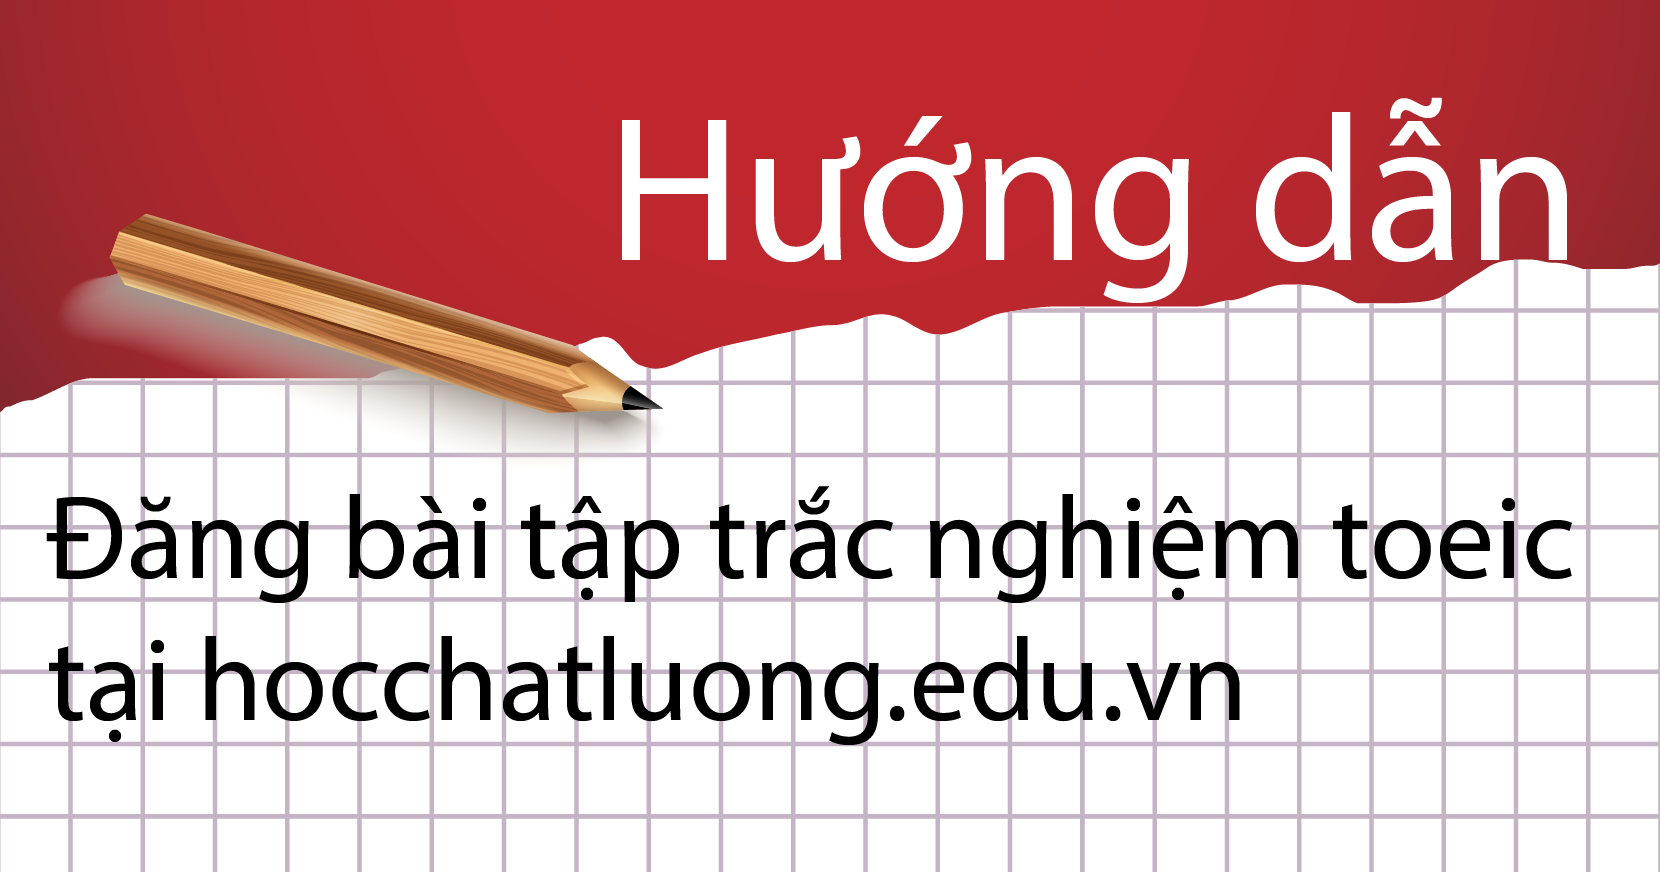 Hướng dẫn đăng bài tập trắc nghiệm toeic tại hocchatluong.edu.vn